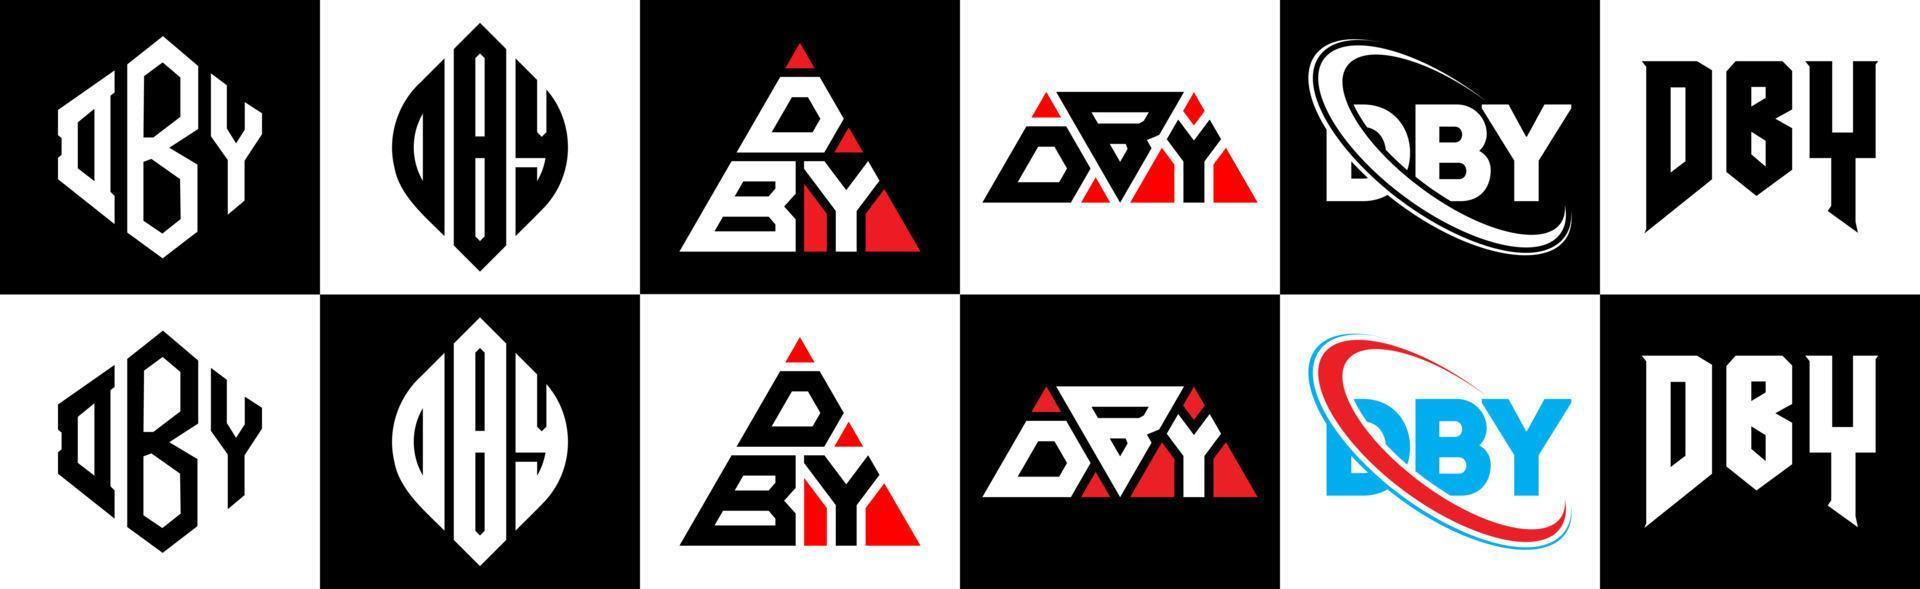 design de logotipo de letra dby em seis estilo. dby polígono, círculo, triângulo, hexágono, estilo plano e simples com logotipo de letra de variação de cor preto e branco definido em uma prancheta. dby logotipo minimalista e clássico vetor